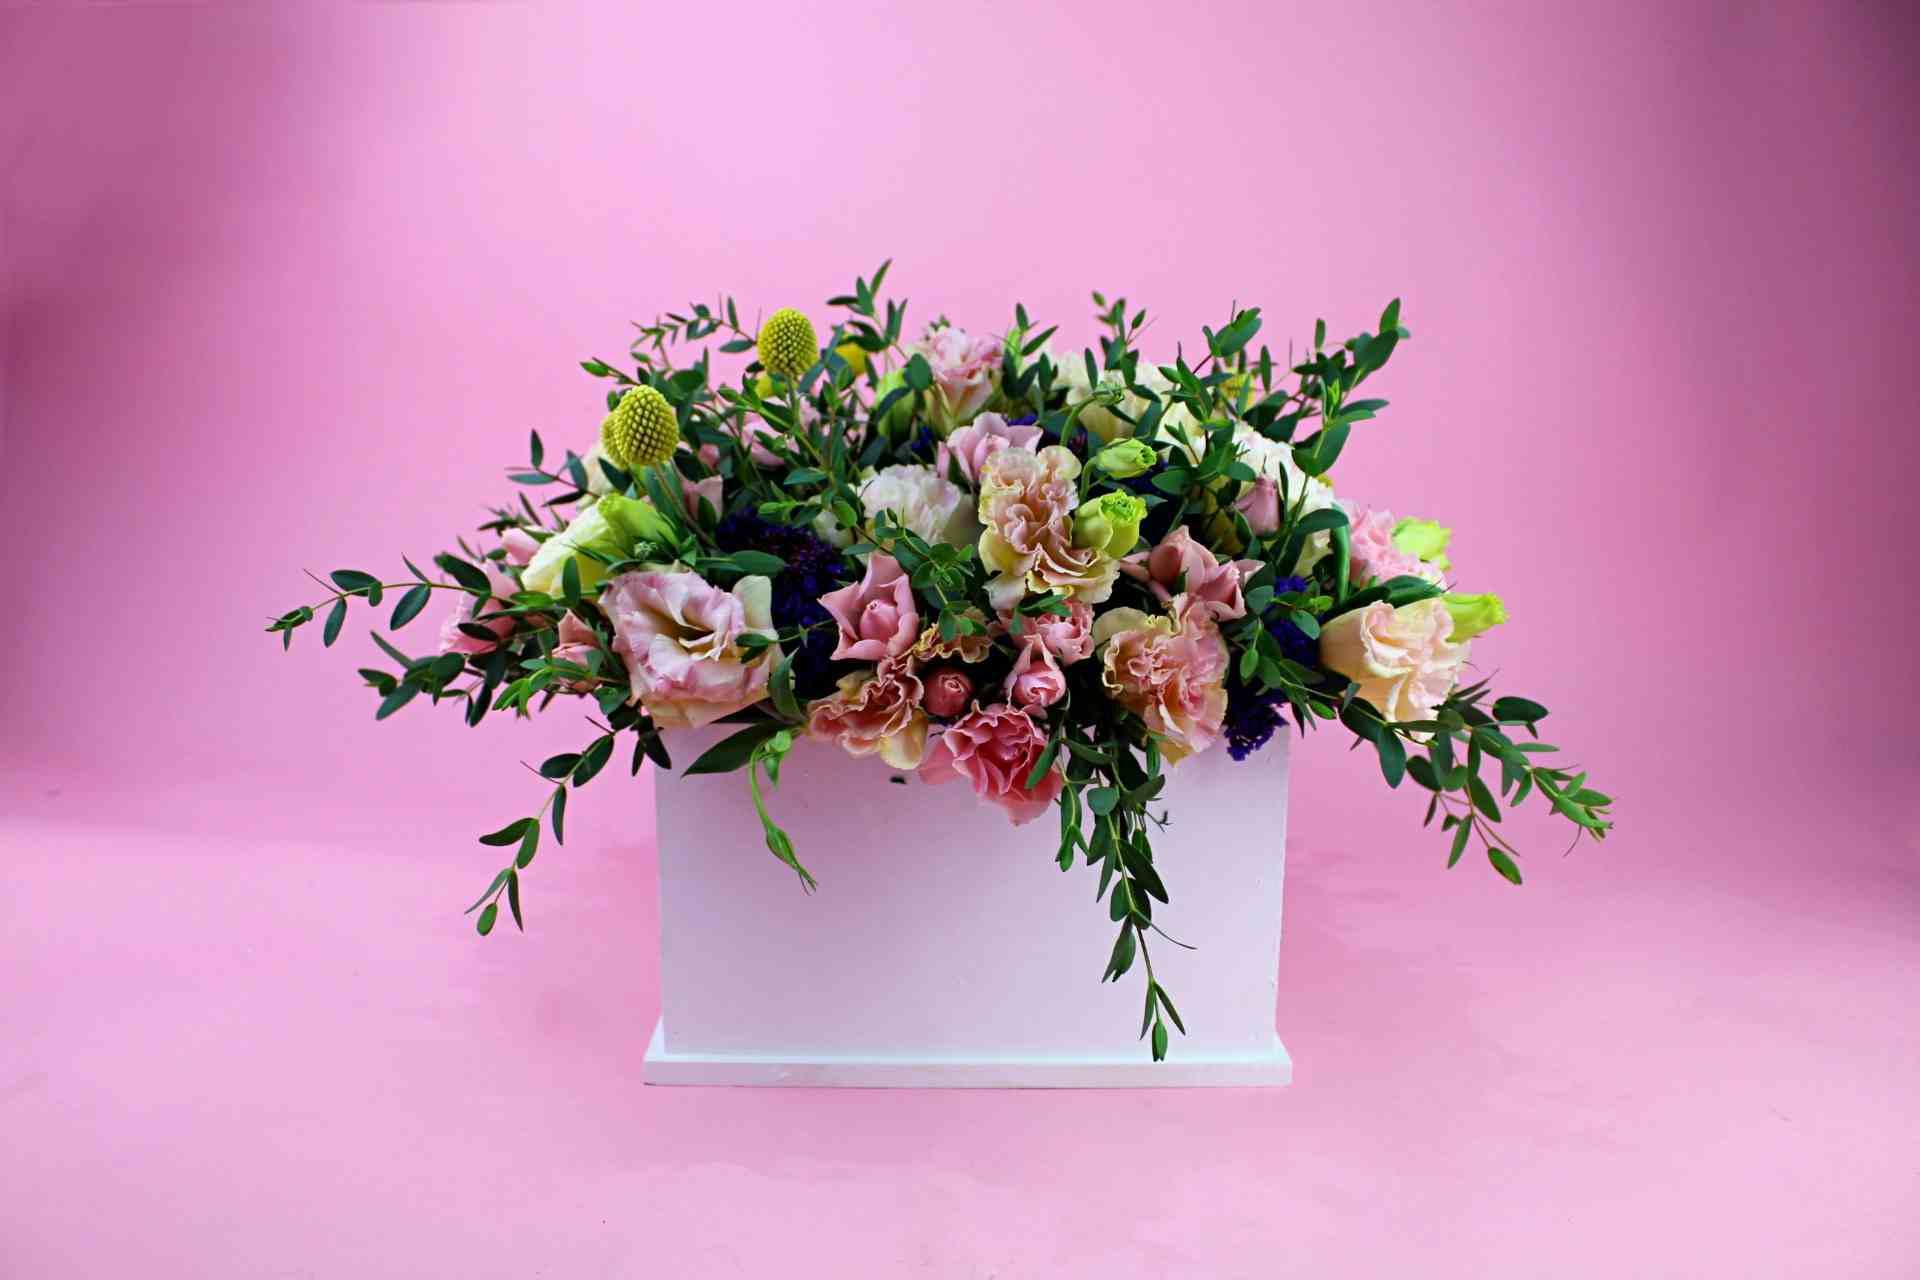 Adorno floral de lisianthus y mini rosas acompañado de follajes diversos